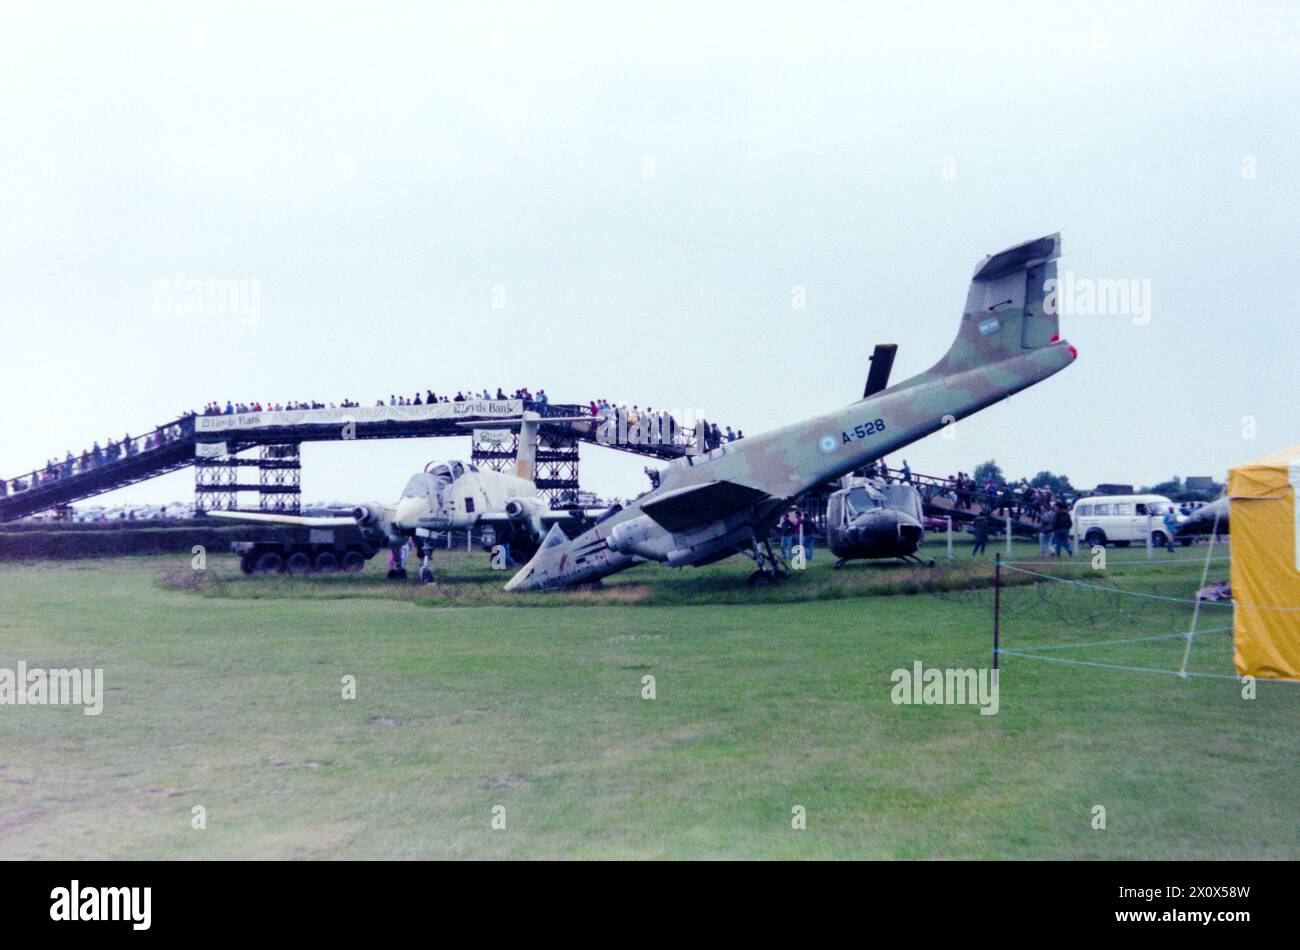 La guerre des Malouines a endommagé l'avion FMA IA-58 Pucara de l'armée de l'air Argentine et l'hélicoptère Bell UH-1 Iroquois ramenés au Royaume-Uni et exposés à l'extérieur du musée de l'aviation militaire à Middle Wallop, Hampshire, Royaume-Uni en 1986. Capturé 'butin de guerre'. Trouvé par les forces britanniques à l'aérodrome de Port Stanley dans les Malouines A-528 rejoint une quantité d'articles expédiés au Royaume-Uni après le conflit. Plus tard réparé et exposé au Norfolk and Suffolk Aviation Museum, Flixton, Royaume-Uni Banque D'Images